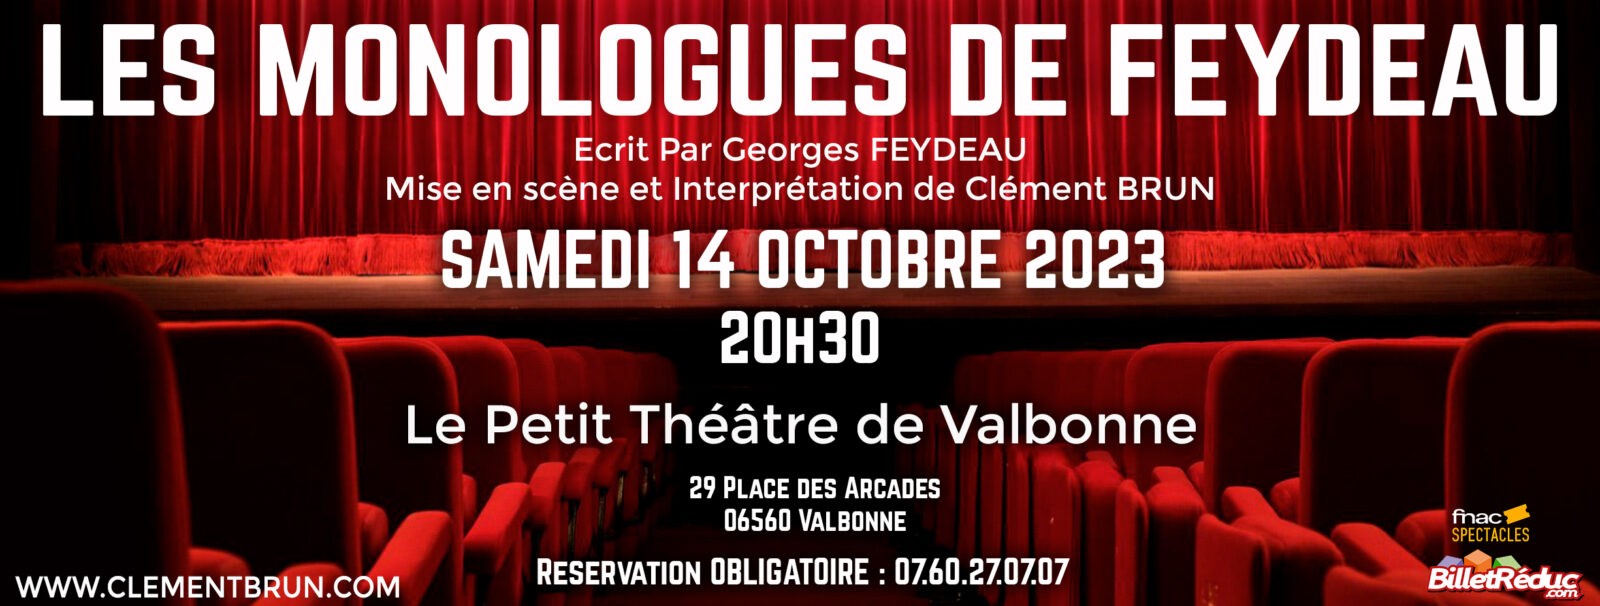 Les Monologues de Feydeau à Valbonne – 14/10/2023